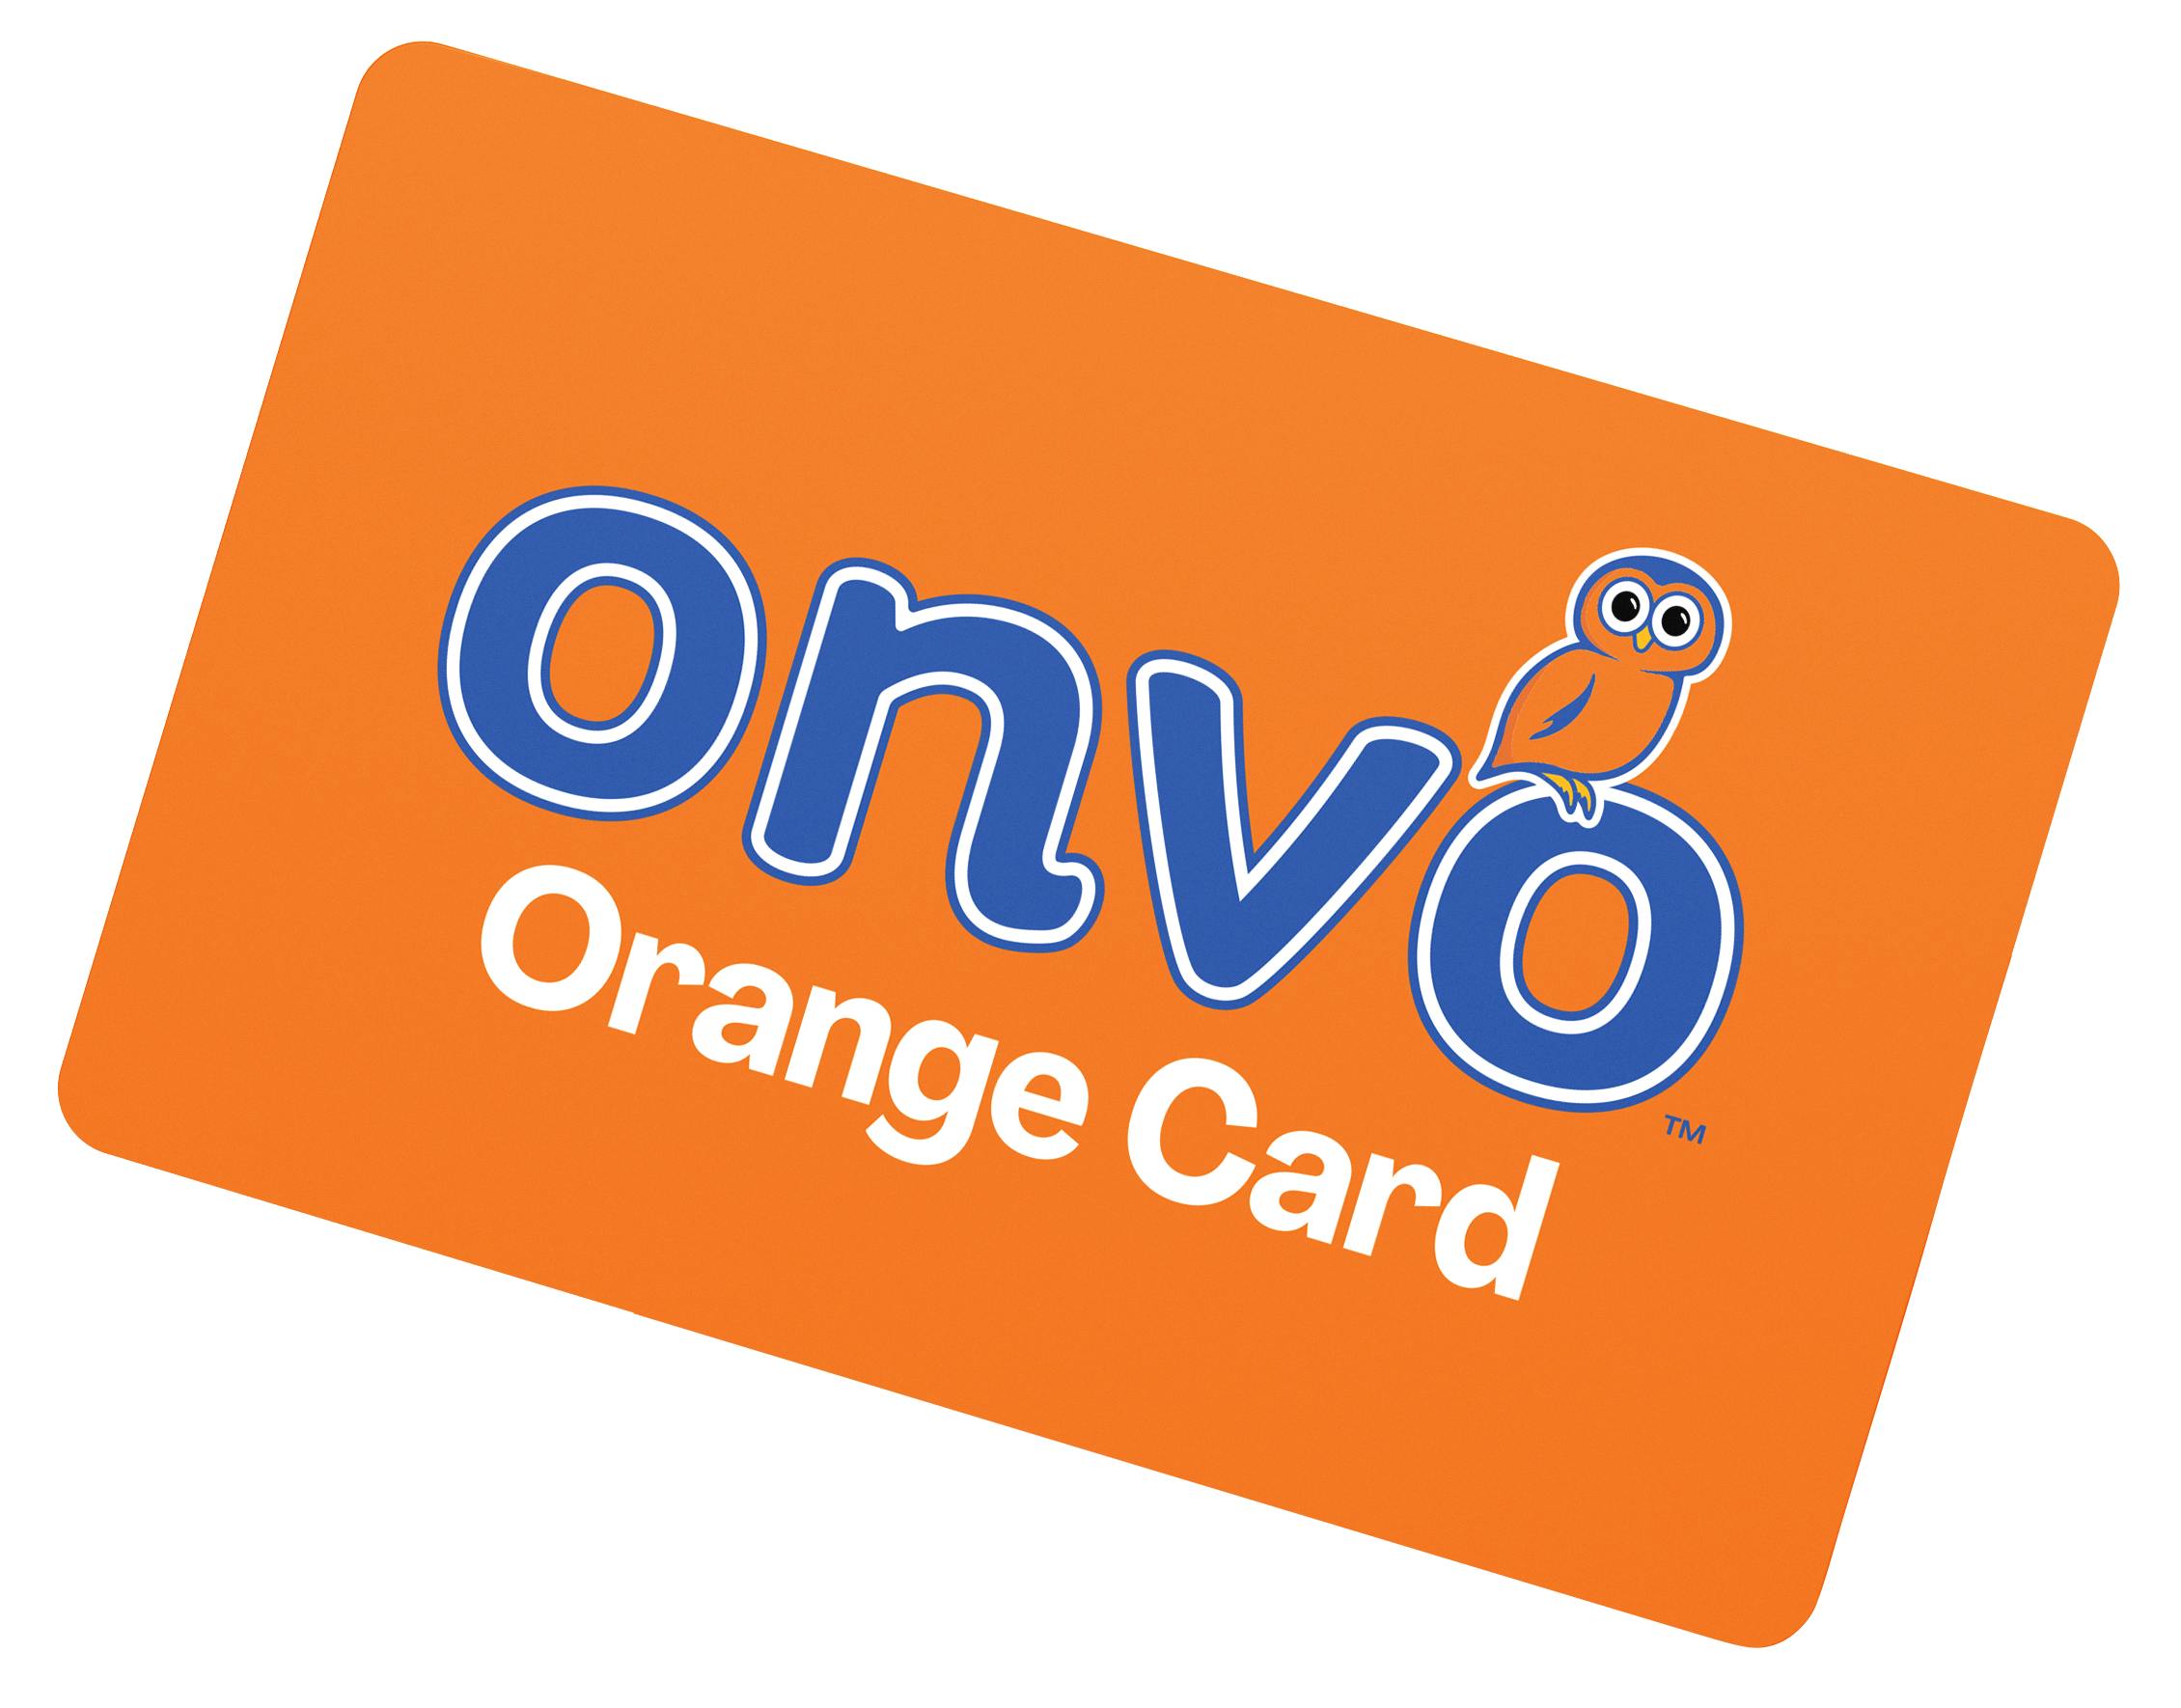 Onvo Orange Card